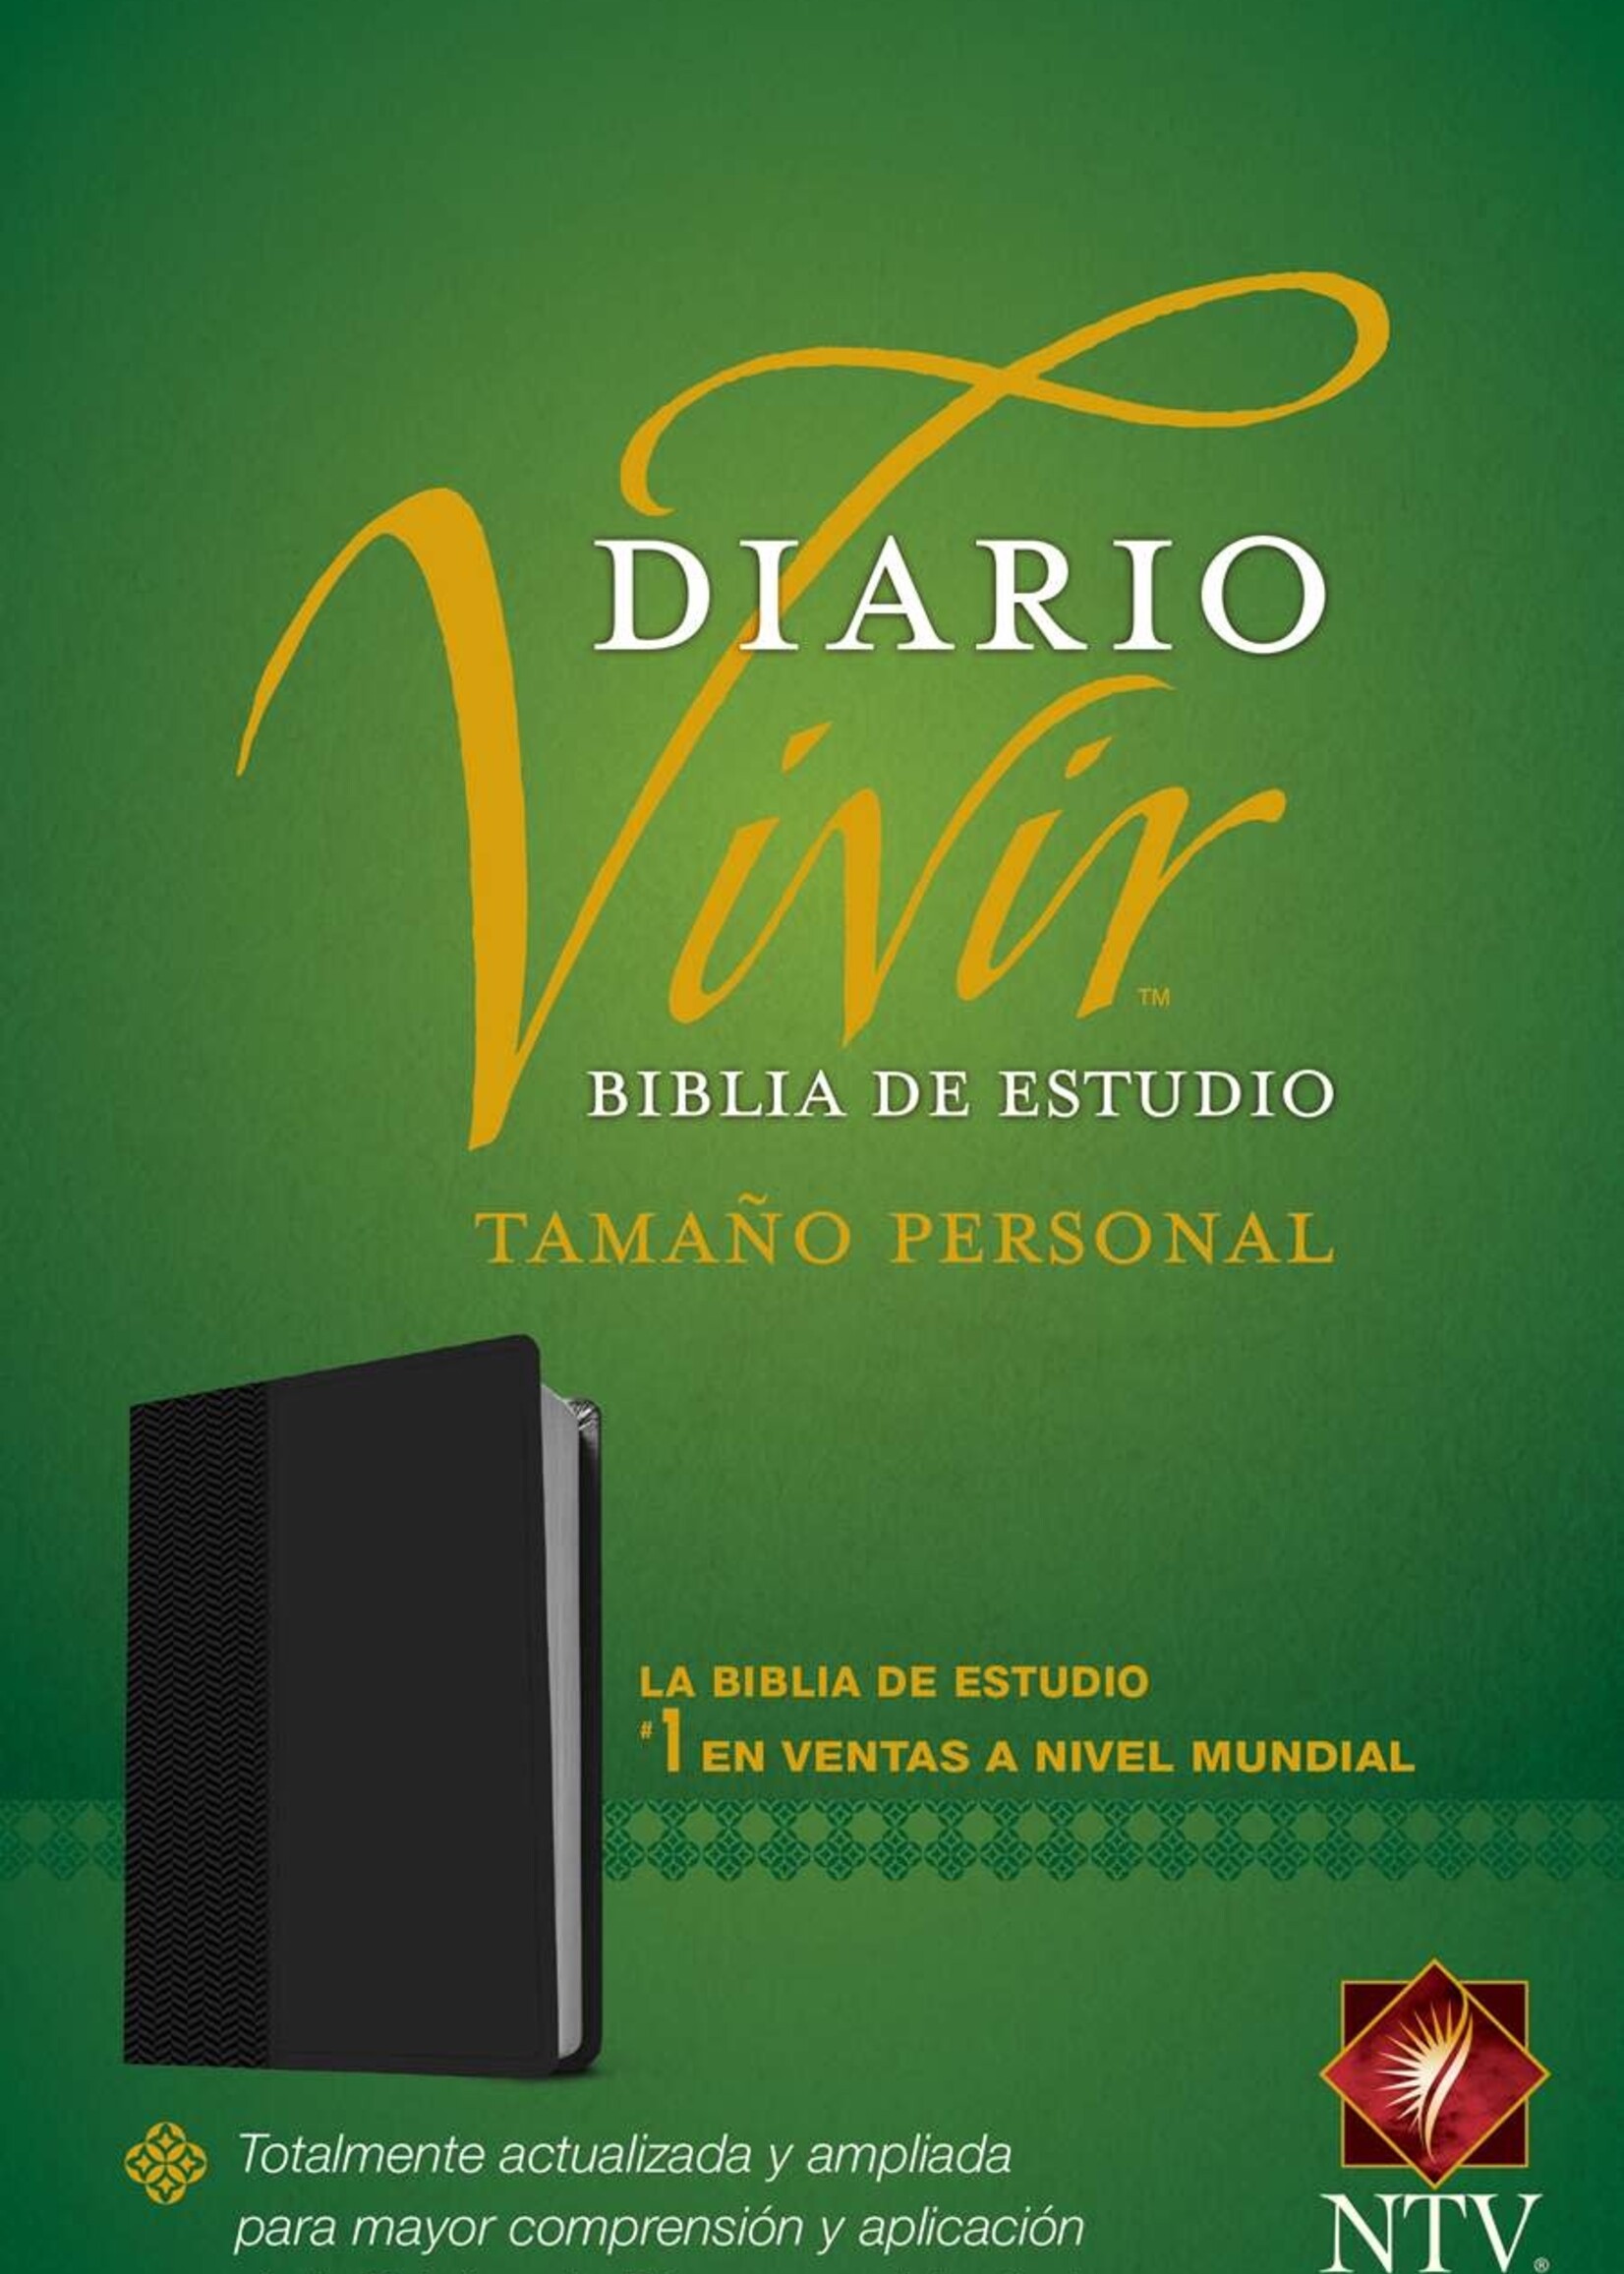 TYNDALE ESPANOL Biblia de Estudio del Diario vivir NTV, Negro, tamaño personal